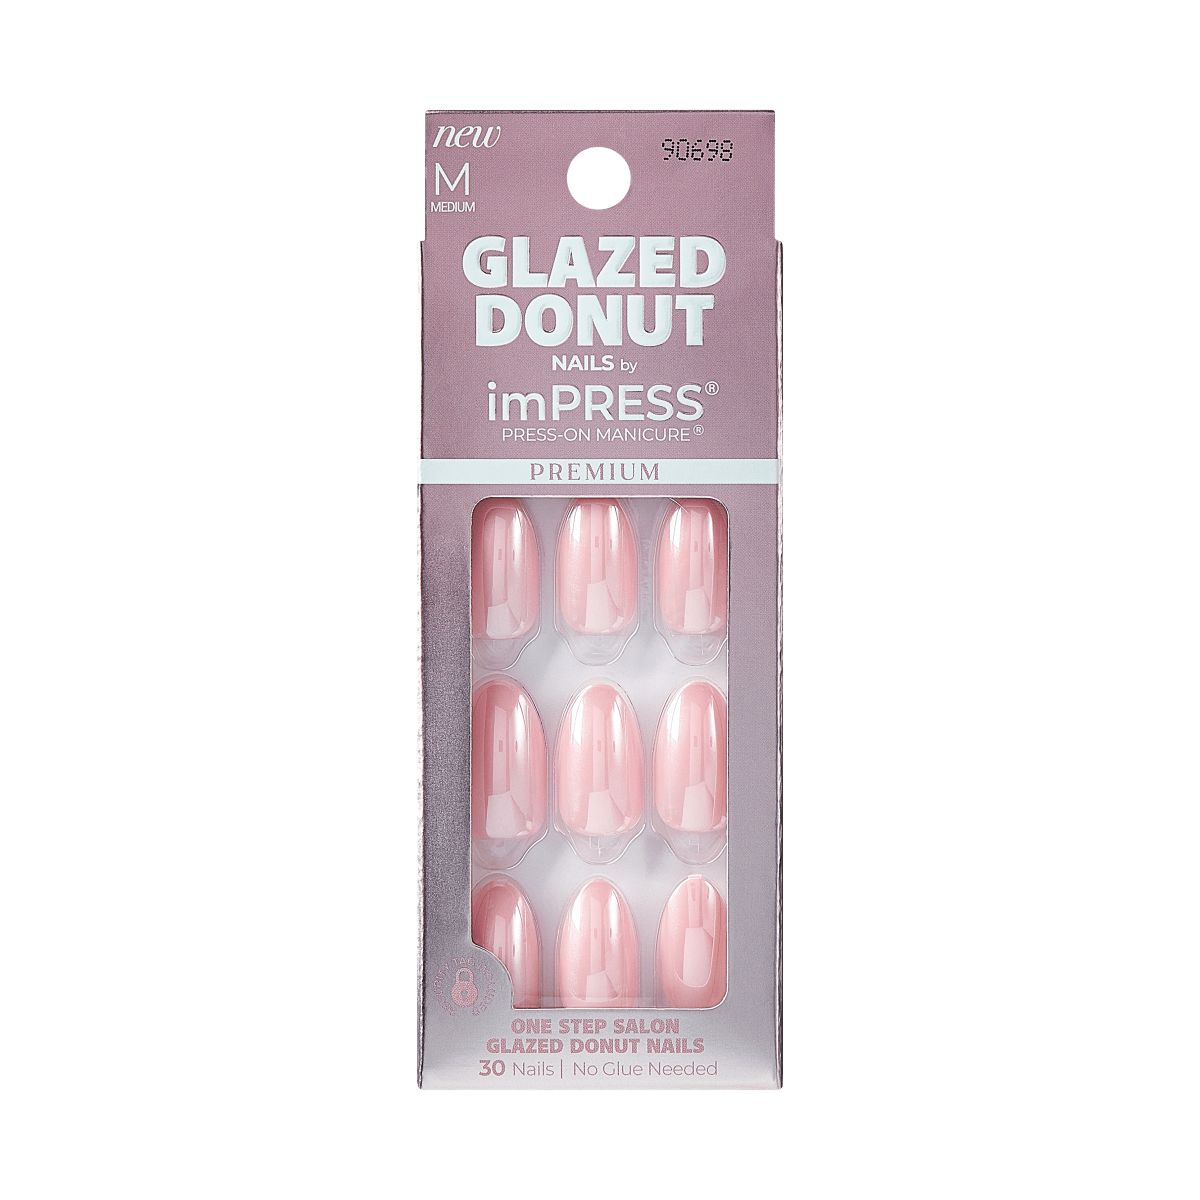 imPRESS Glazed Donut Press-On Manicure - Strawberry Glazed